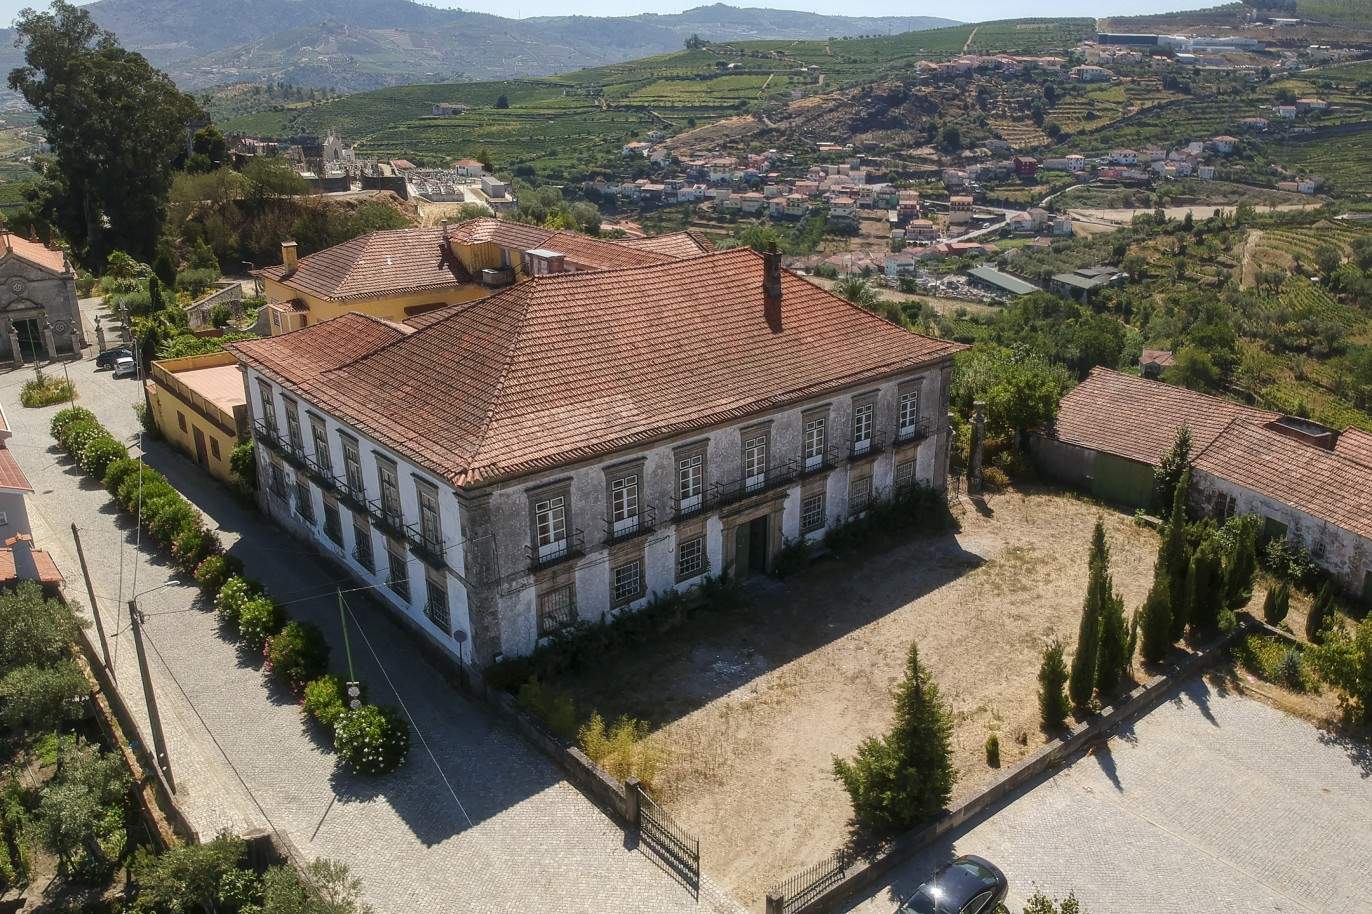 Venta: Palacete para restaurar con jardines y fuente centenaria, en Lamego, región vinícola del Alto Duero, norte de Portugal_207355